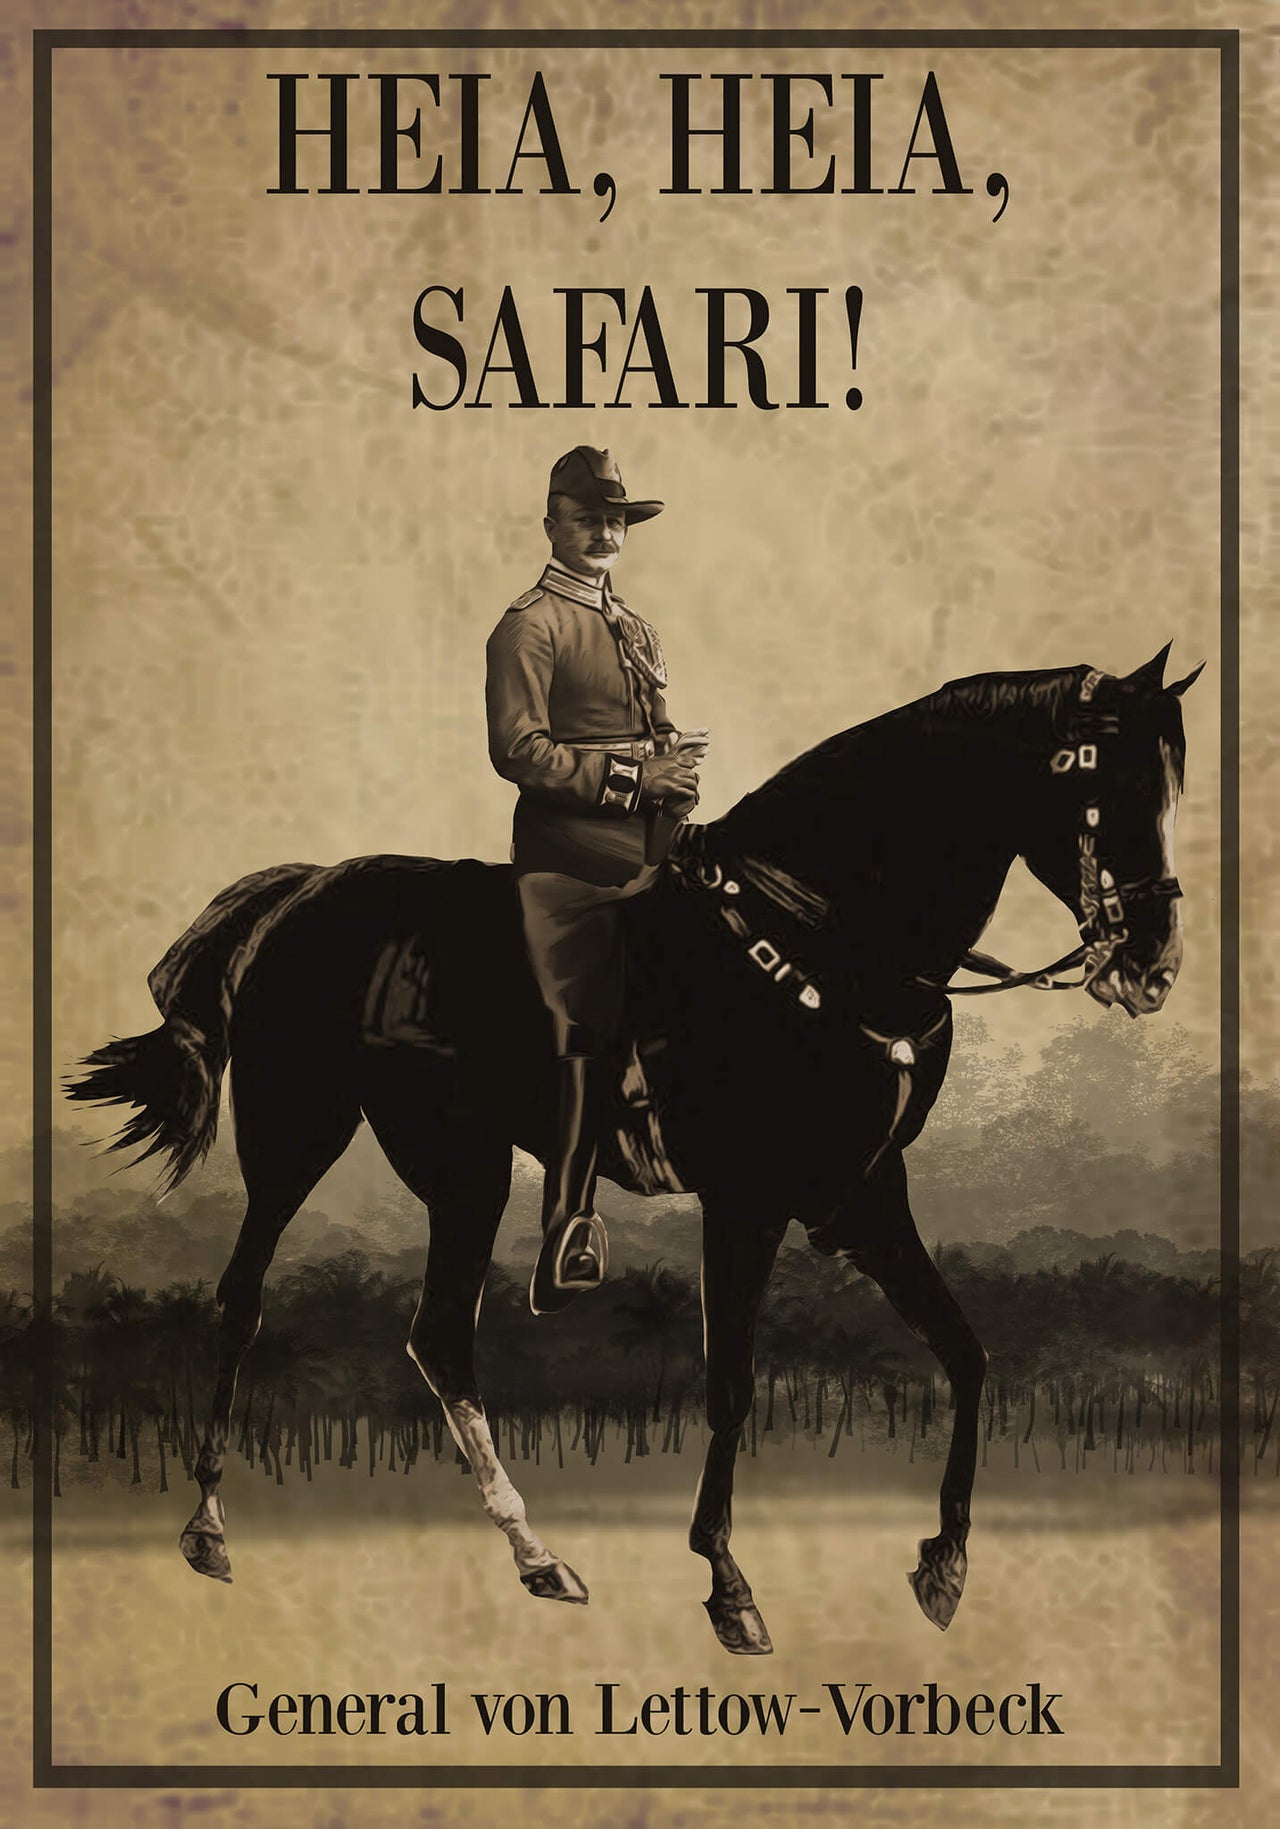 Heia Heia Safari - Paul von Lettow-Vorbeck Poster